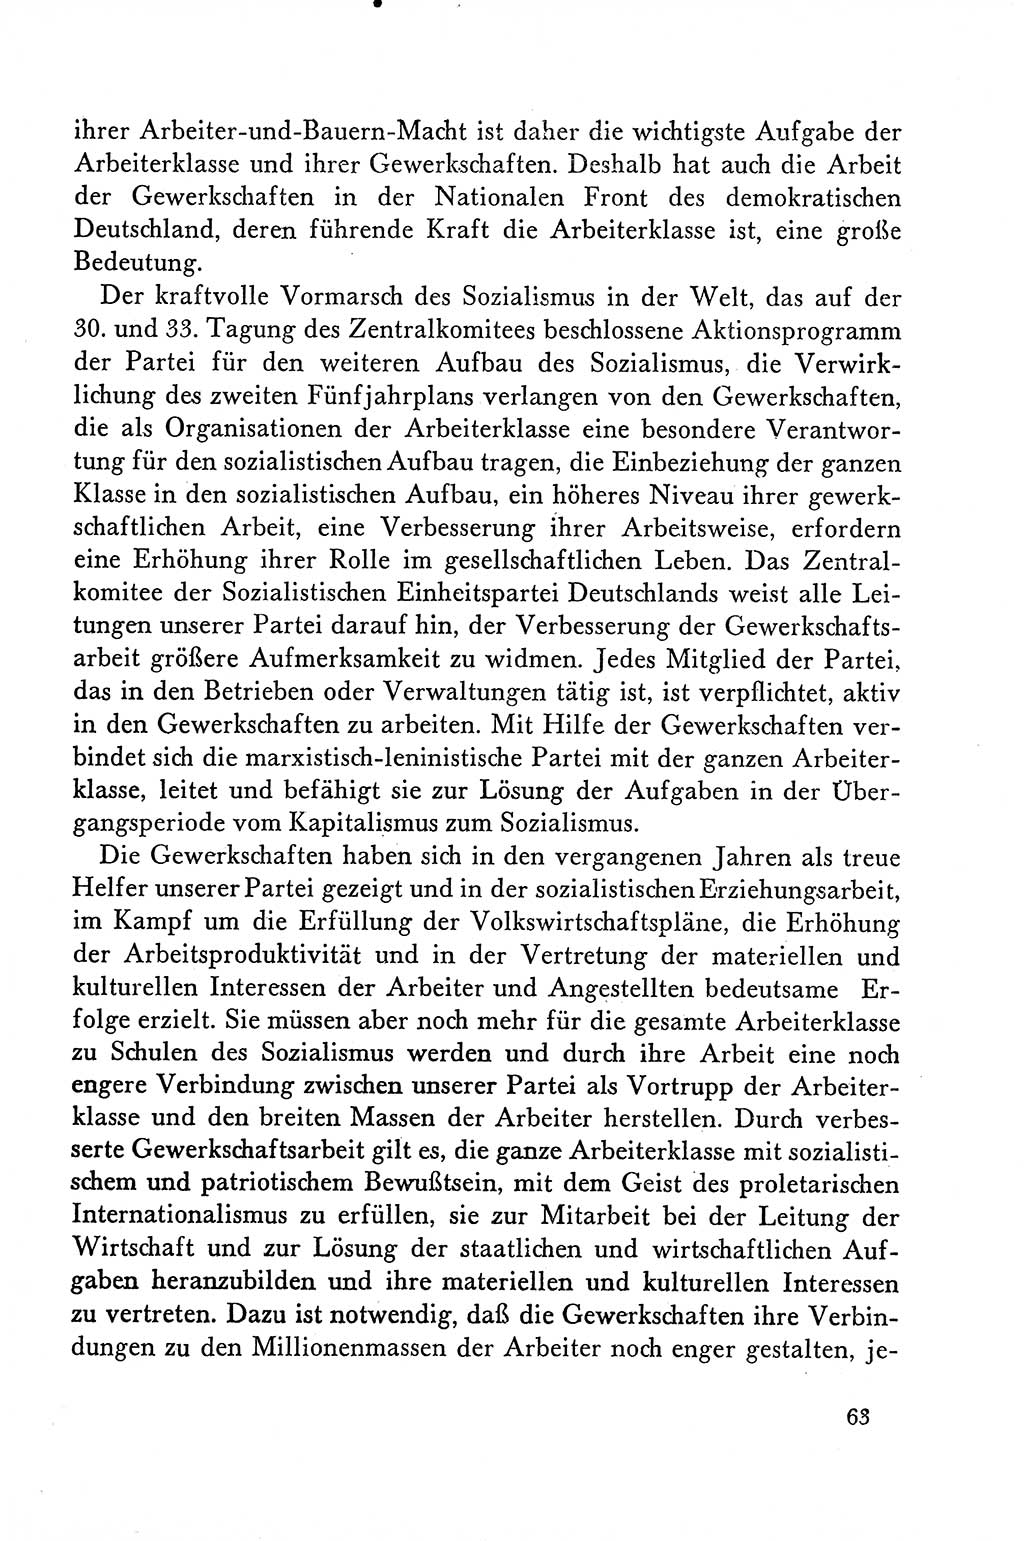 Dokumente der Sozialistischen Einheitspartei Deutschlands (SED) [Deutsche Demokratische Republik (DDR)] 1958-1959, Seite 63 (Dok. SED DDR 1958-1959, S. 63)